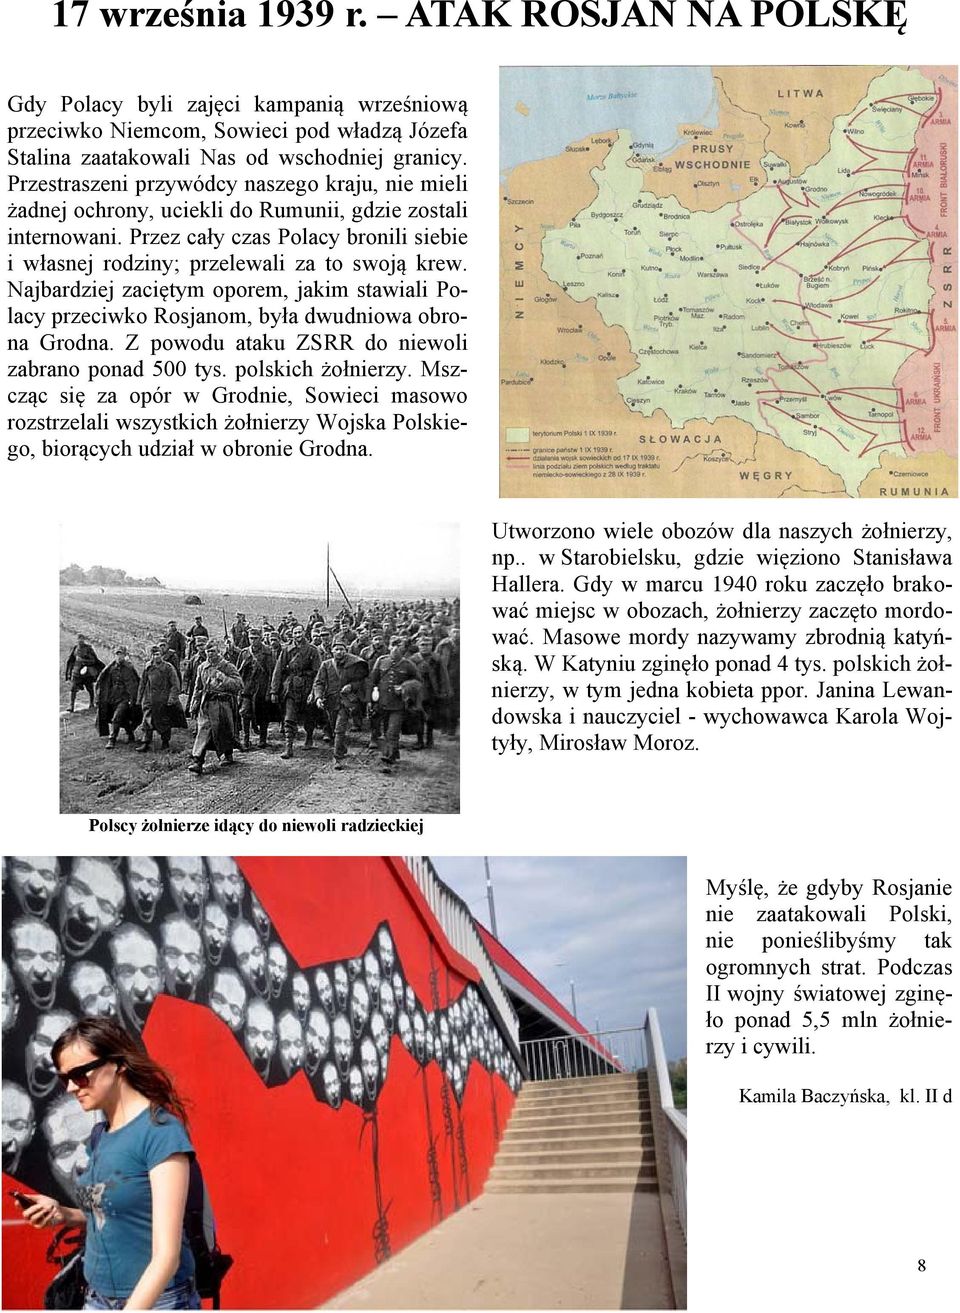 Najbardziej zaciętym oporem, jakim stawiali Polacy przeciwko Rosjanom, była dwudniowa obrona Grodna. Z powodu ataku ZSRR do niewoli zabrano ponad 500 tys. polskich żołnierzy.